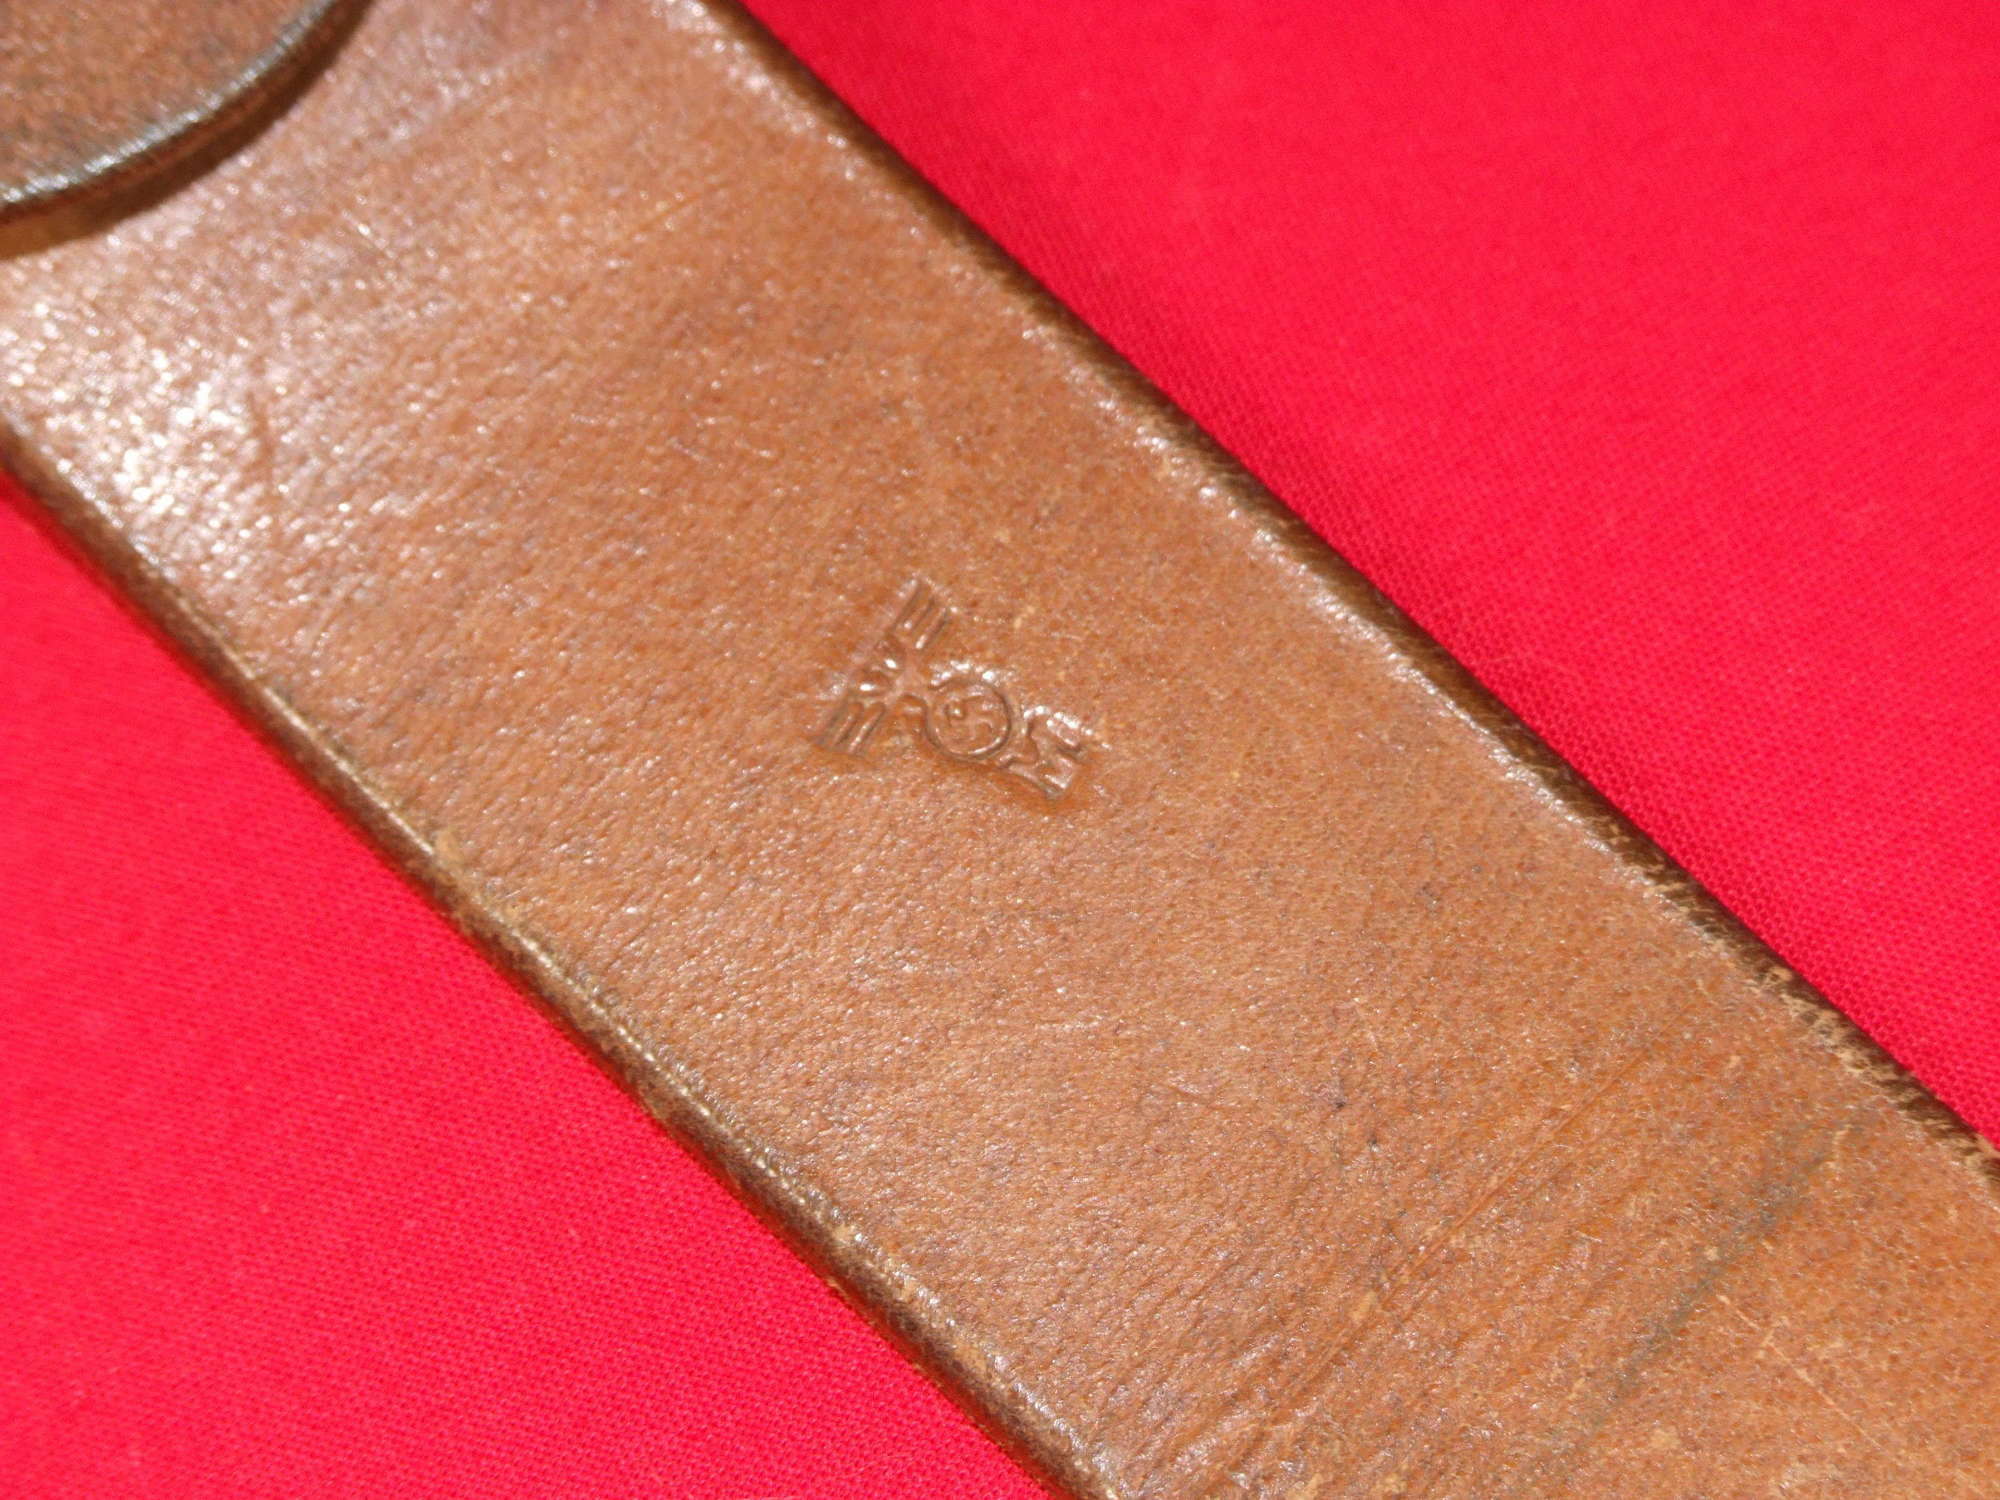 Kriegsmarine Man's Leather Belt